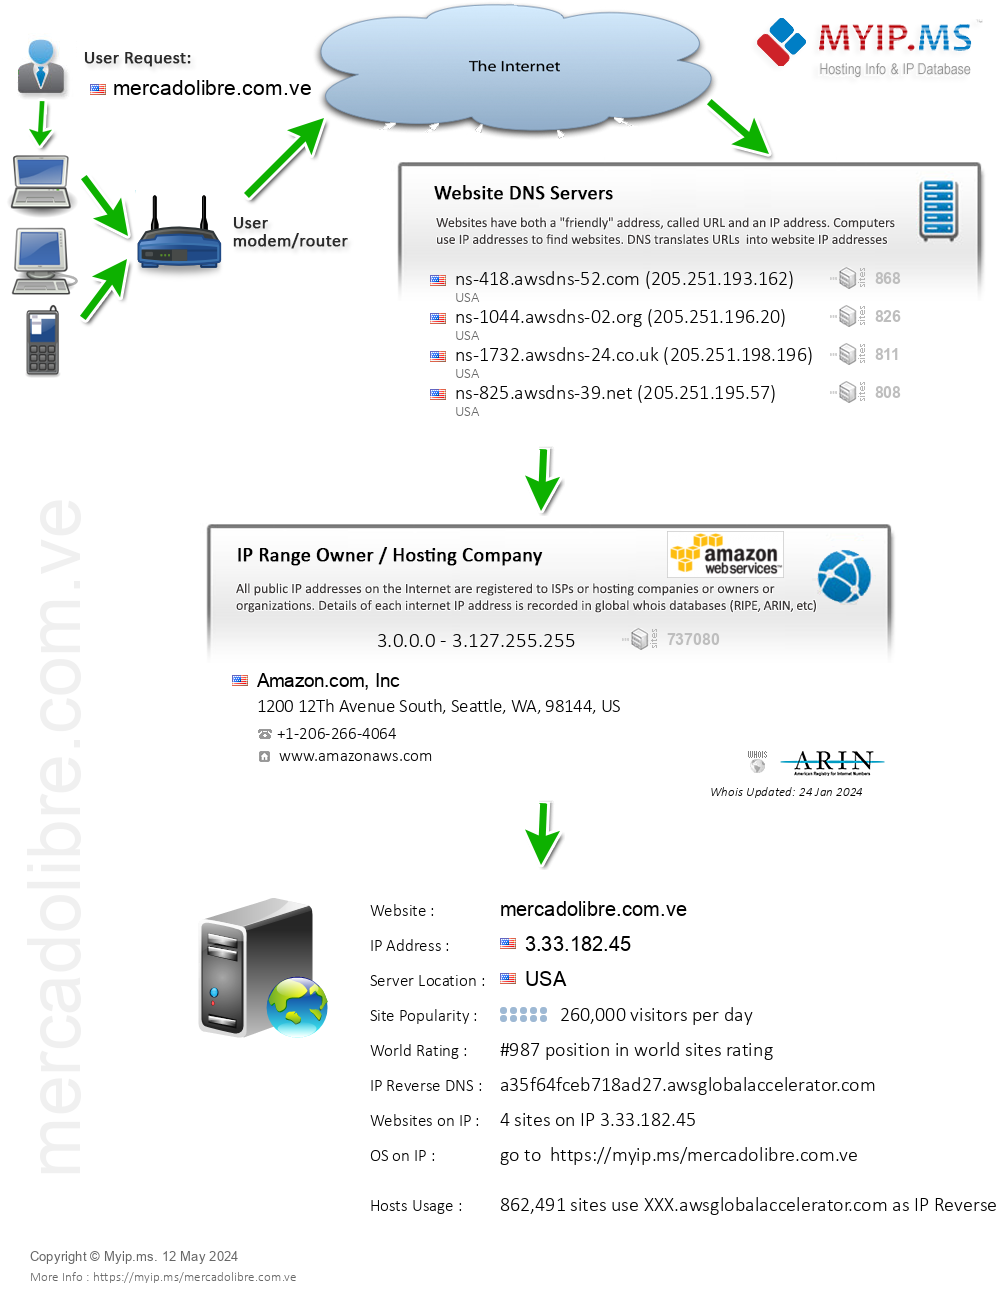 Mercadolibre.com.ve - Website Hosting Visual IP Diagram